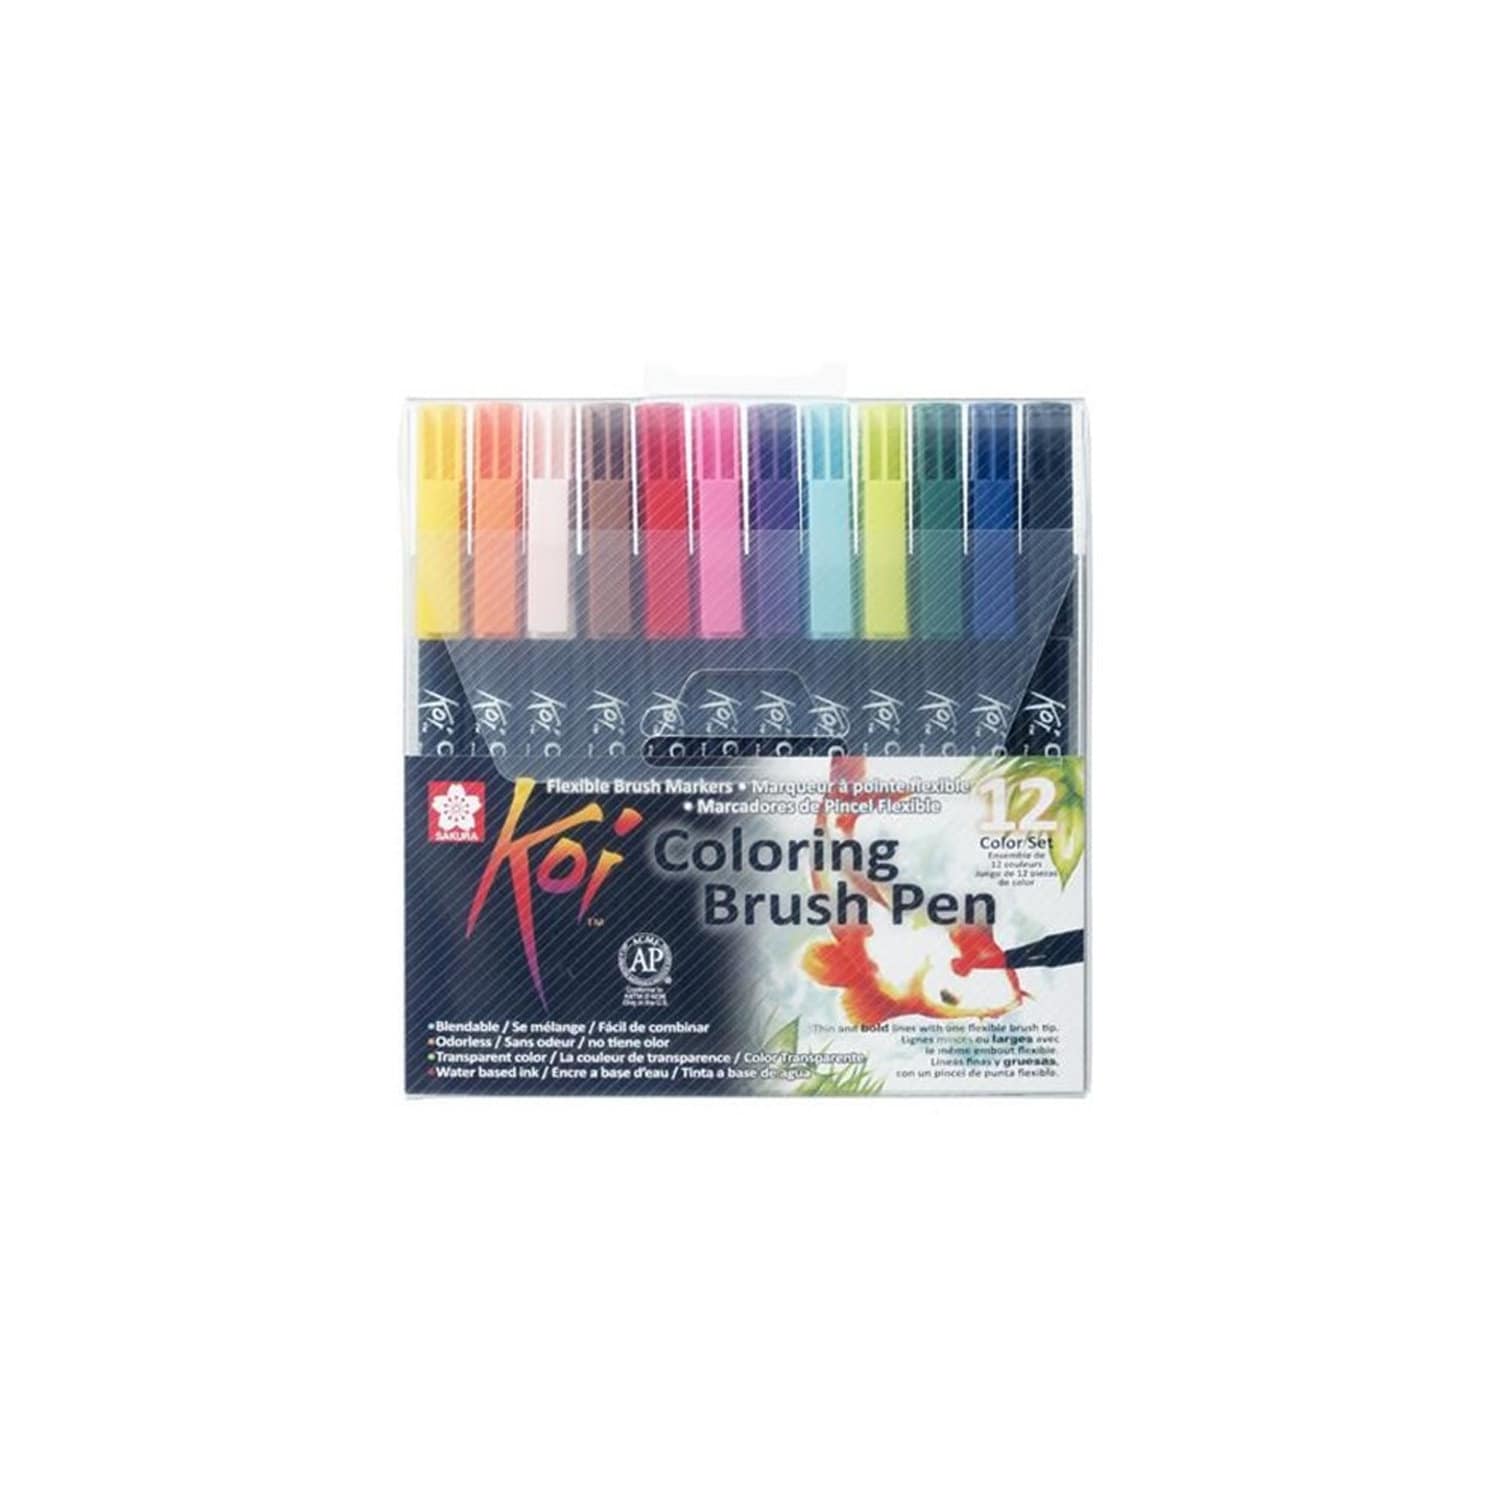 12 crayons Flexibles